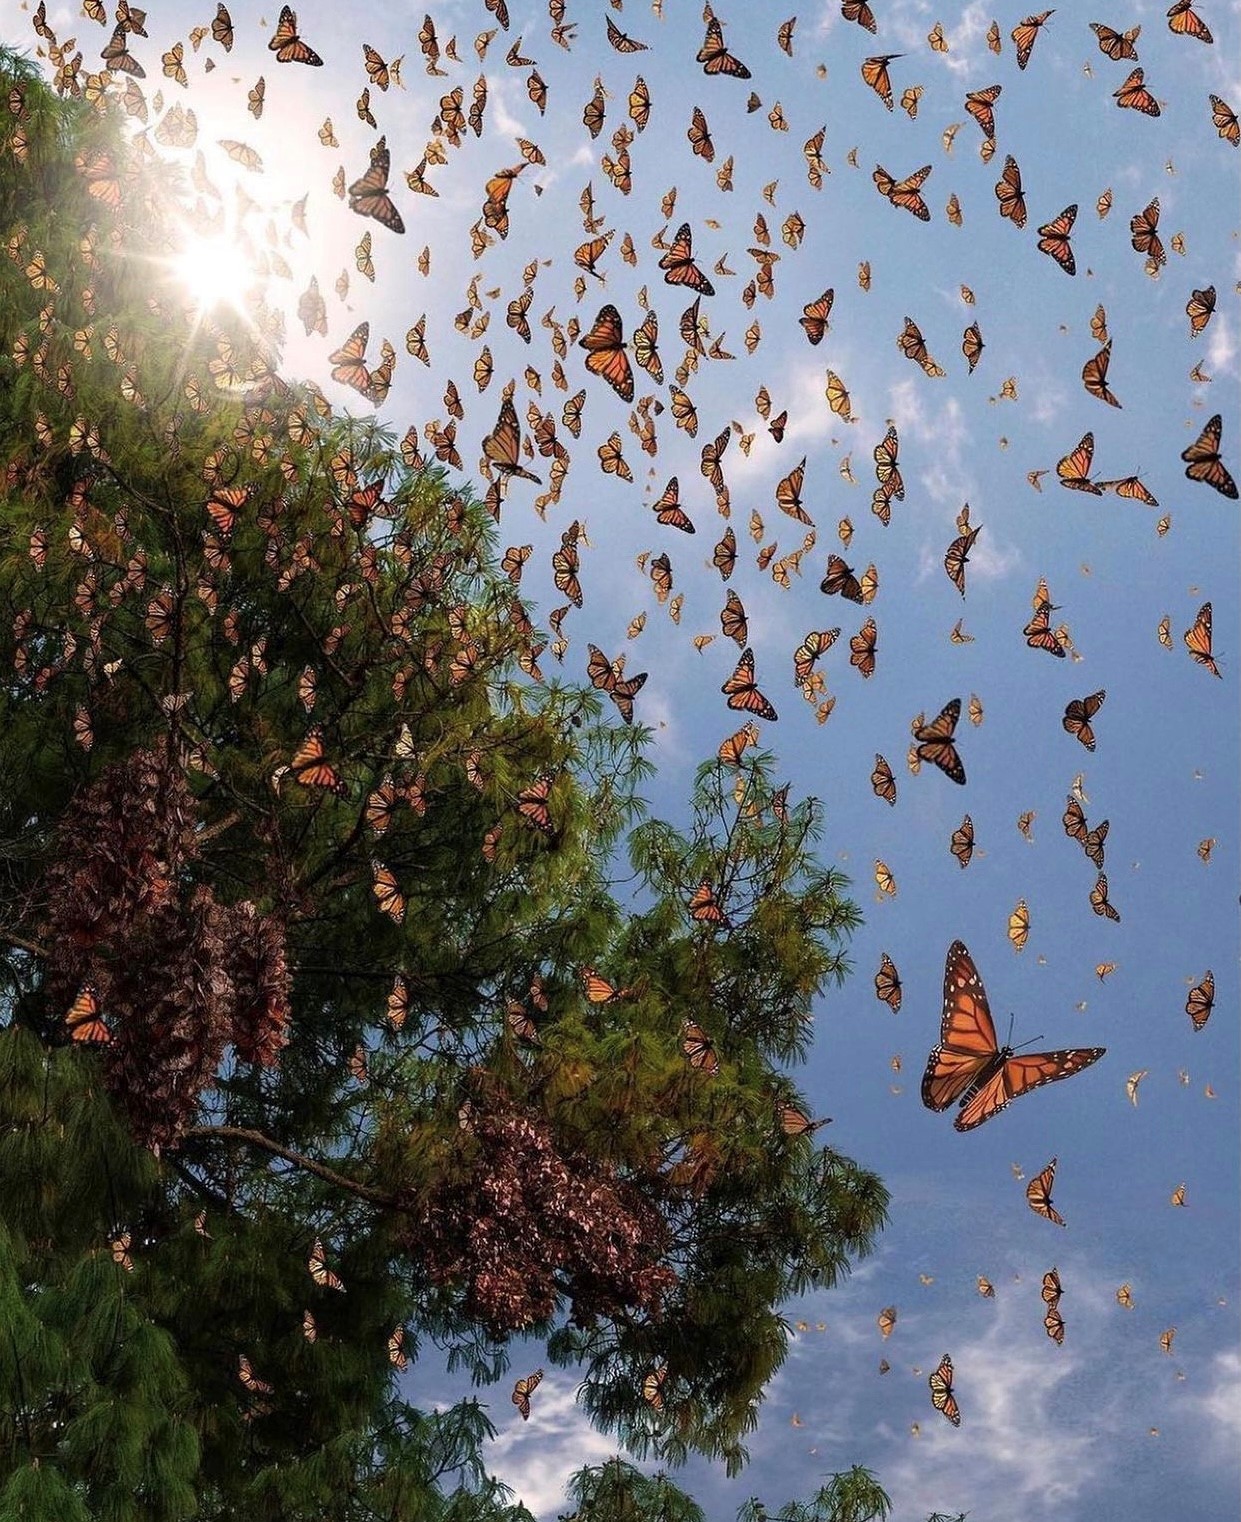 Бабочек легкая стая. Биосферный заповедник бабочки Монарх. Биосферный заповедник Марипоса-Монарка. Бабочки Мексика Мичоакан. Миграция бабочек монархов Мексика.